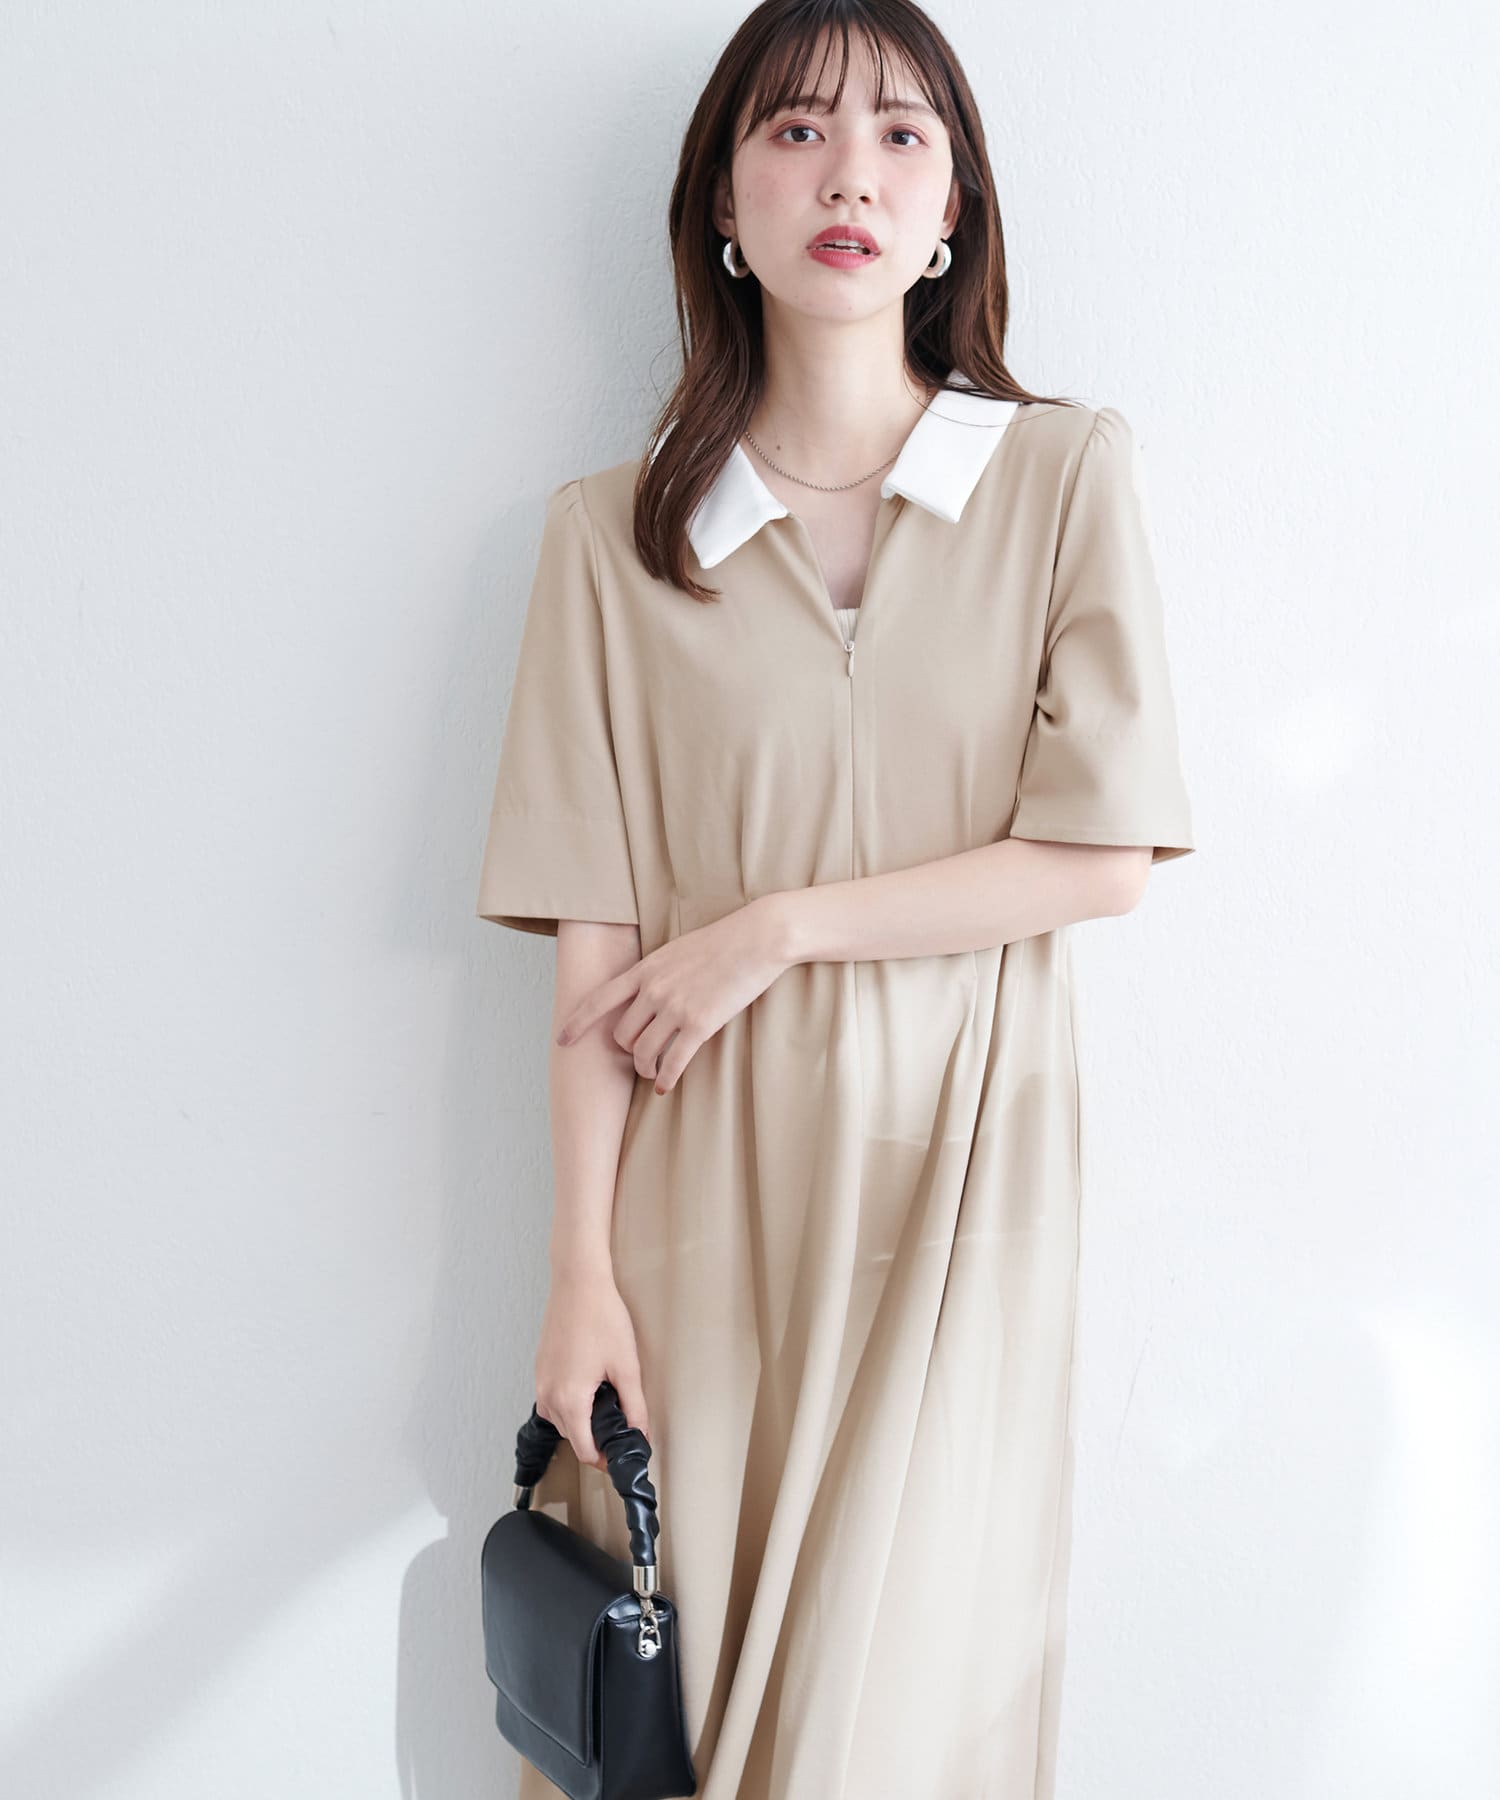 natural couture(ナチュラルクチュール) WEB限定 /【mamamo】配色衿5分袖カットワンピース